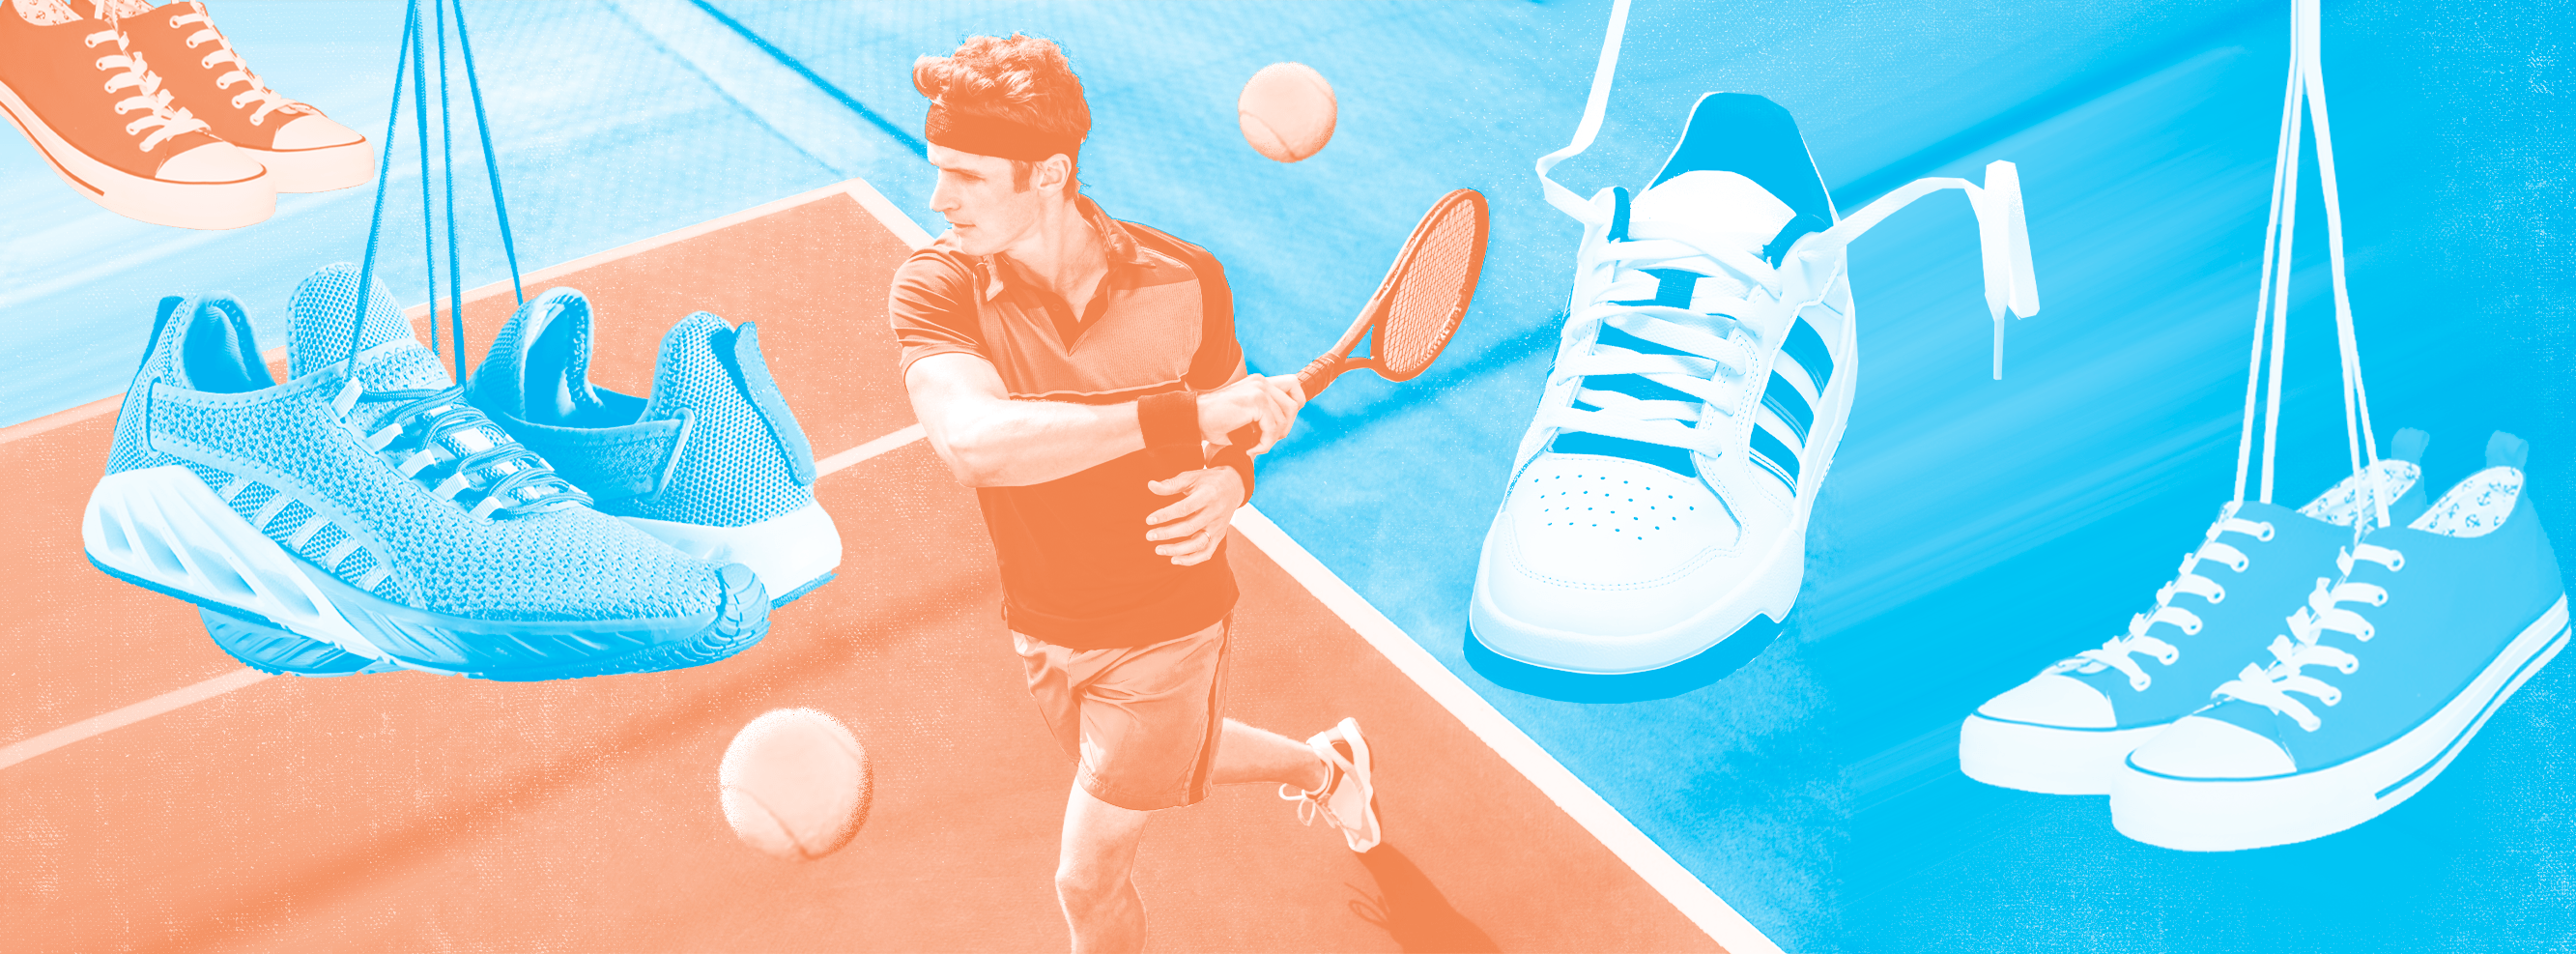 Полноразмерная обложка поста на тему: Хочу играть в большой теннис, а кроссовок нет: какие взять